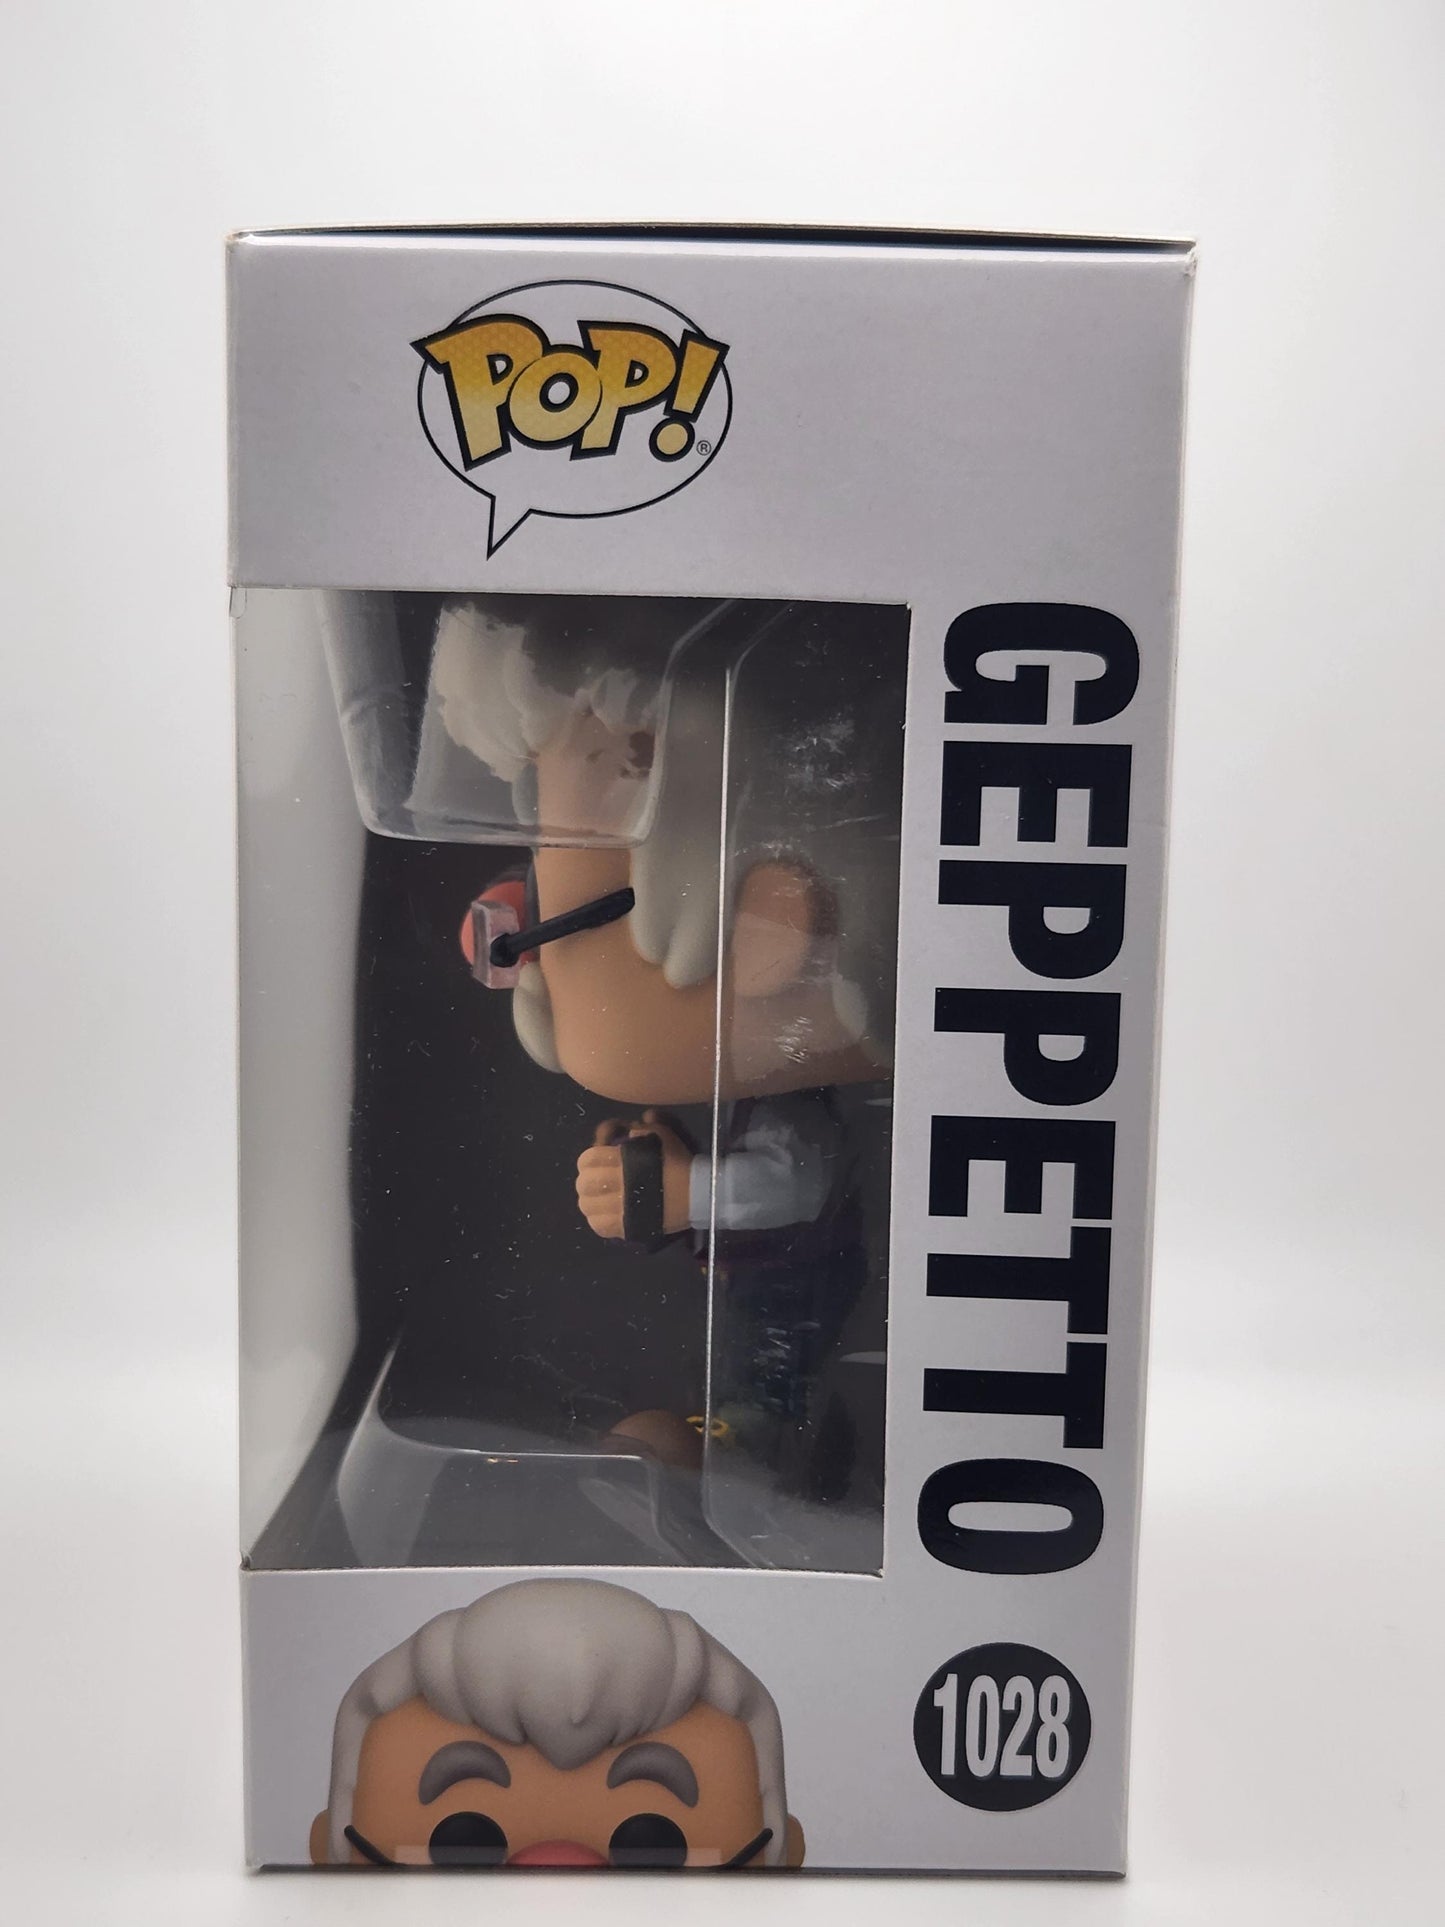 Geppetto - #1028 - Box Condition 8/10